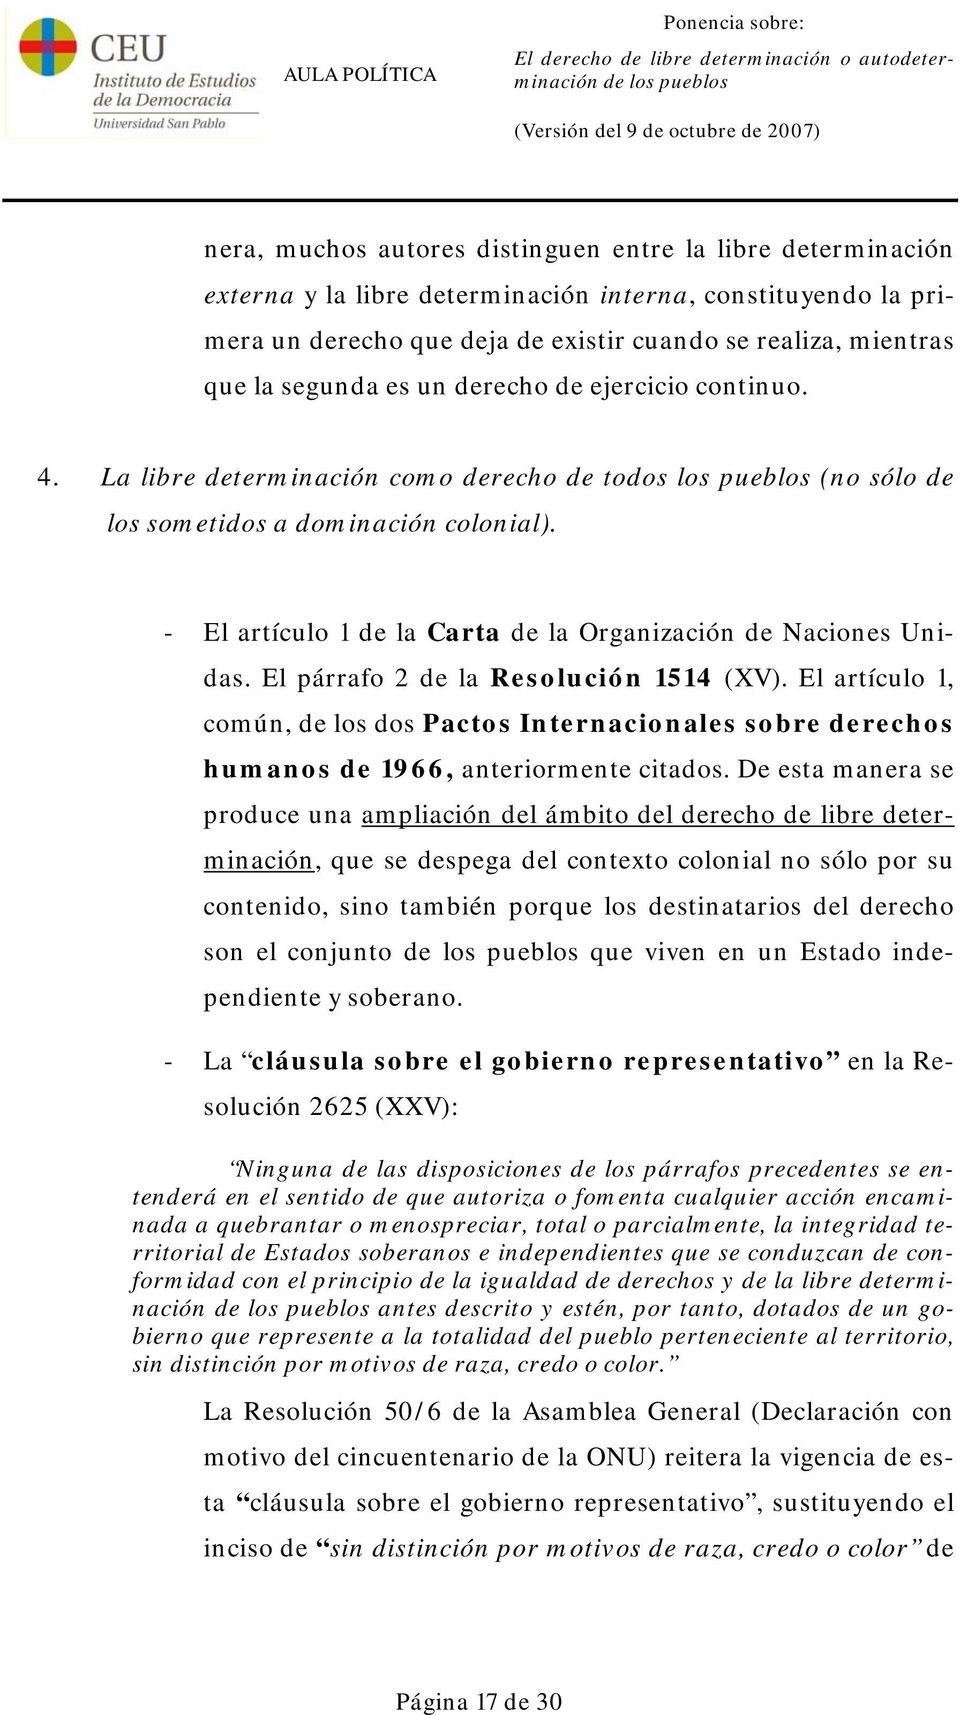 - El artículo 1 de la Carta de la Organización de Naciones Unidas. El párrafo 2 de la Resolución 1514 (XV).